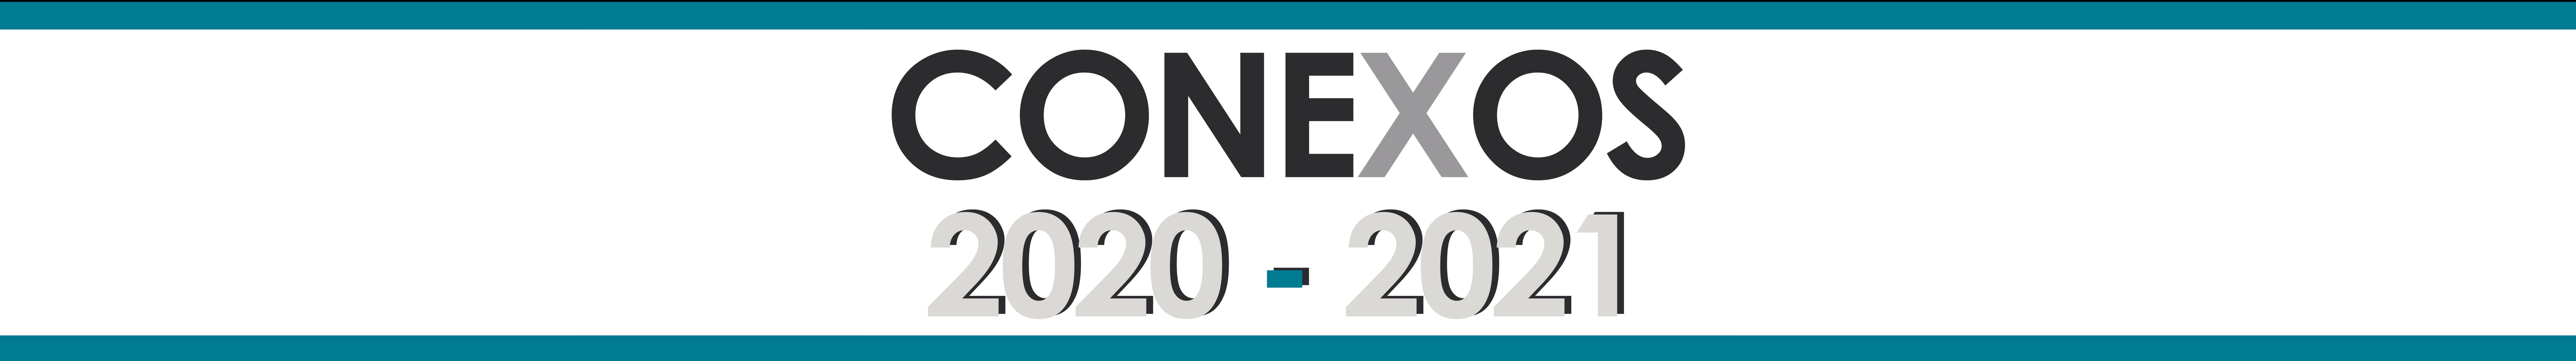 CONEXOS VIRTUAL 2020 - 2021's profile banner